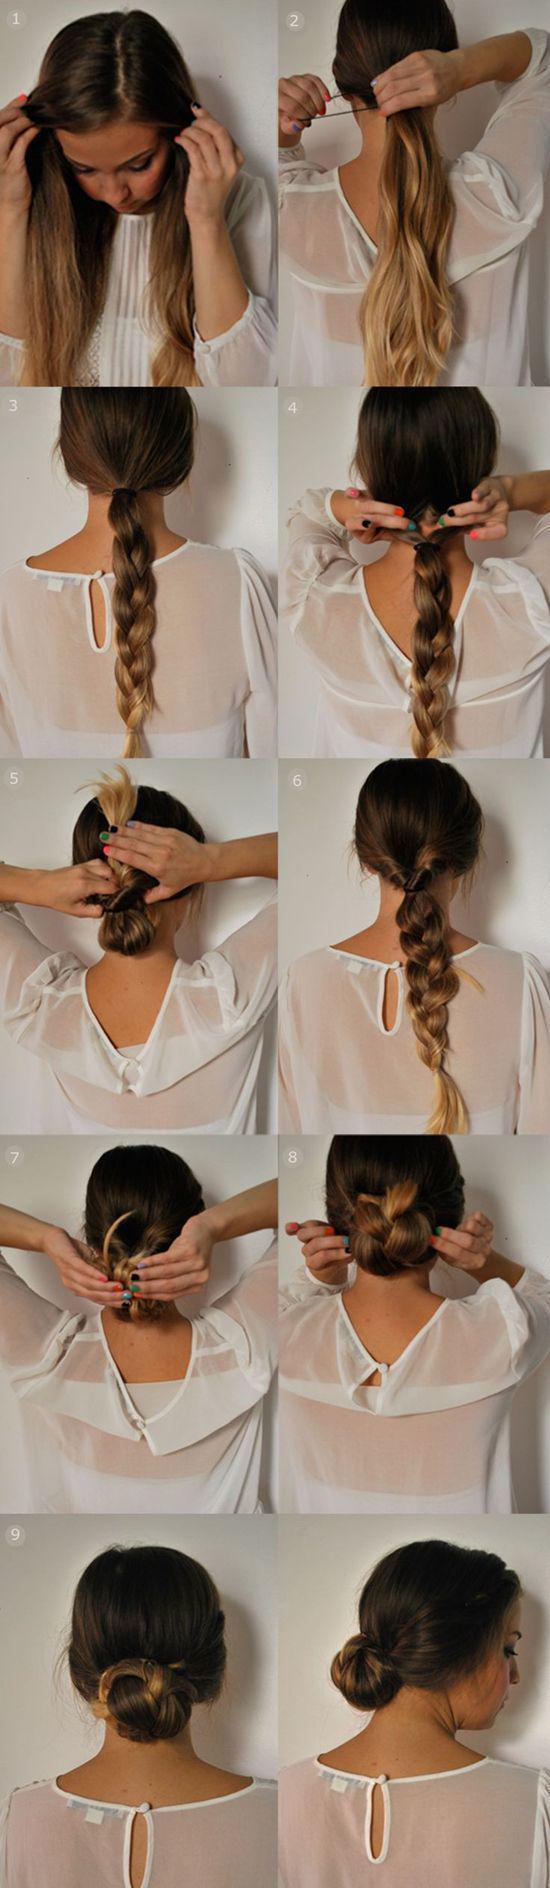 รูปภาพ:http://hairstylesweekly.com/images/2015/01/Quick-5-minutes-updo-braided-ponytail-updo.jpg